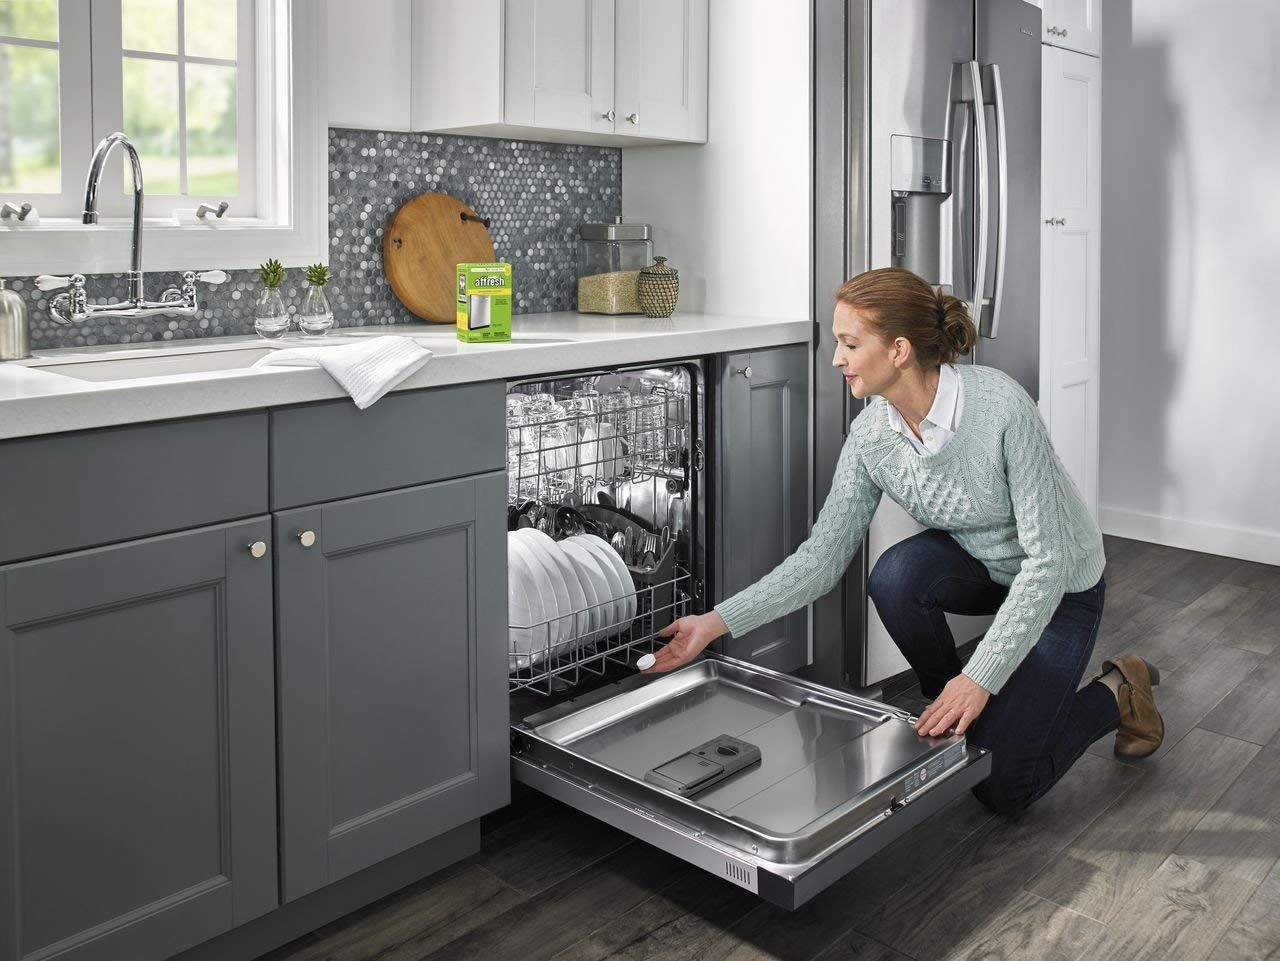 Smart dishwashing items for washing by hand & dishwashers